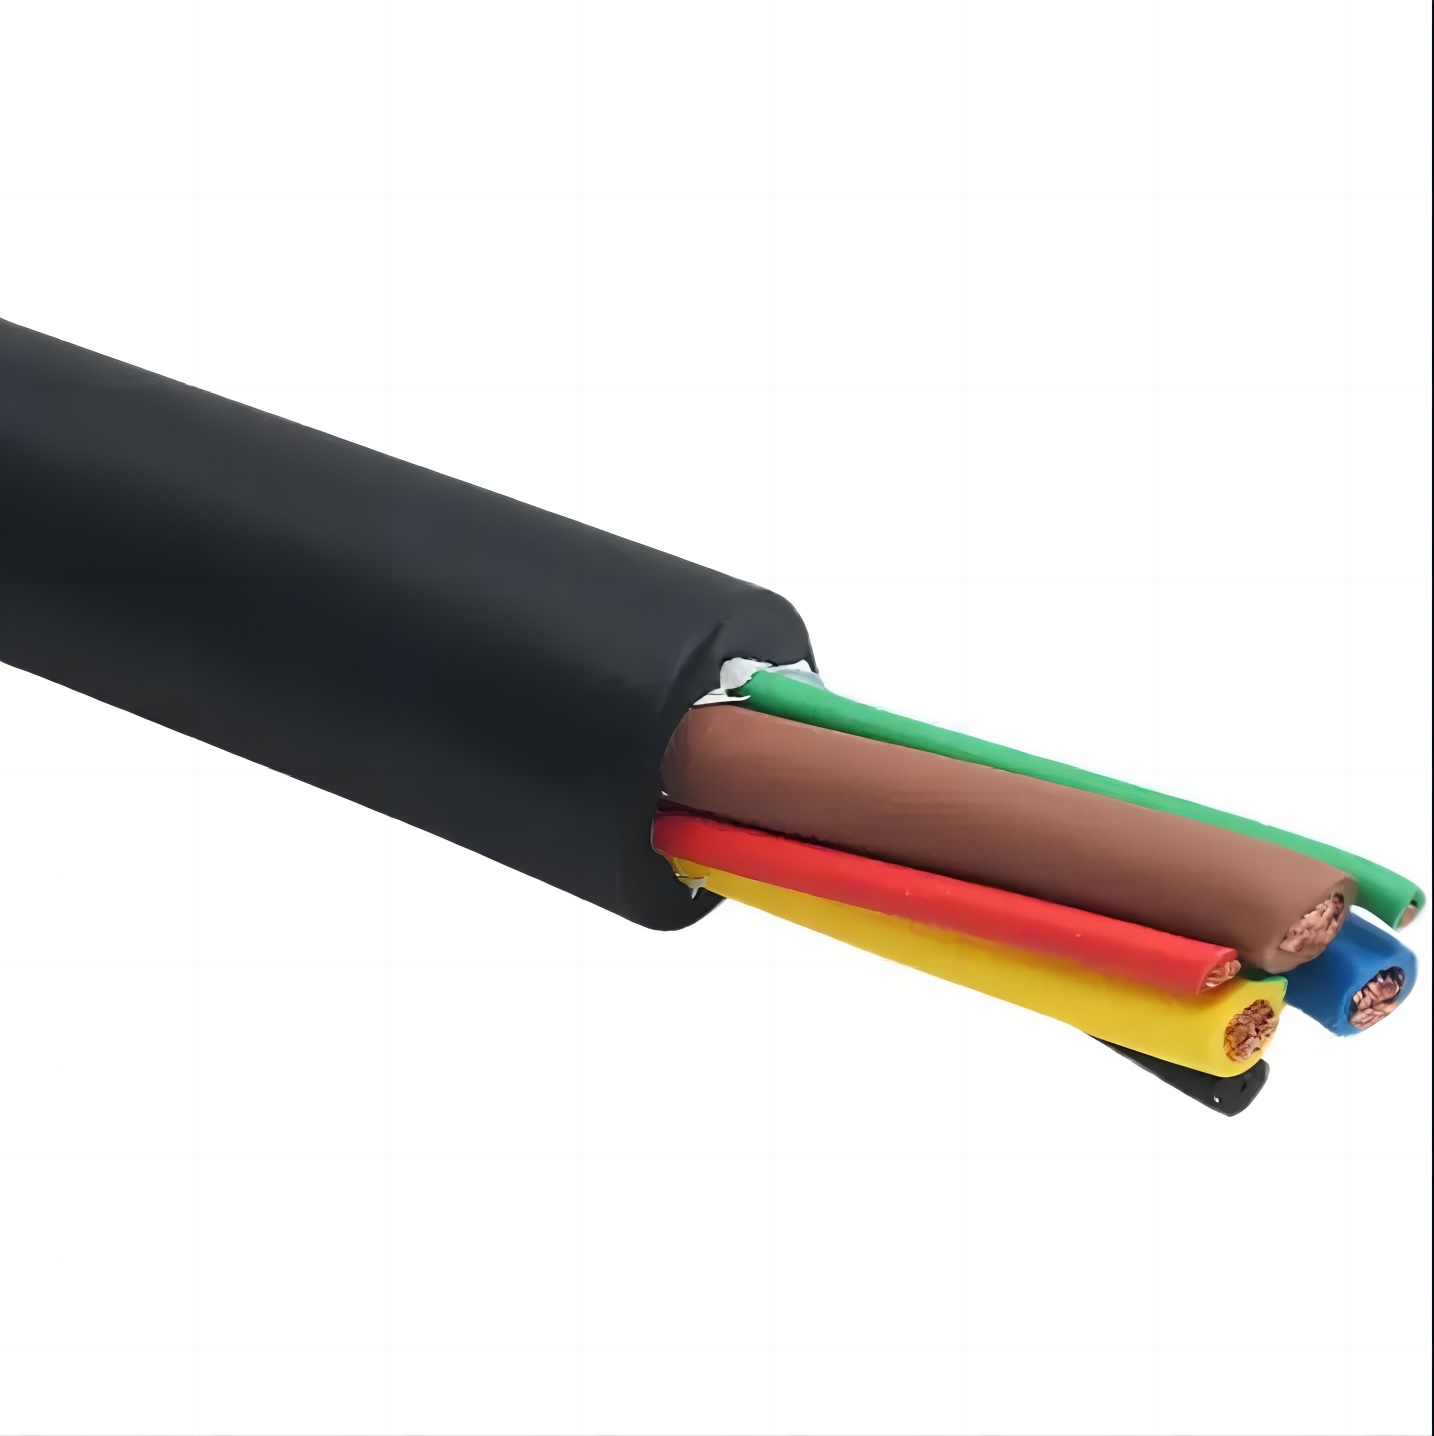 EV connection cable